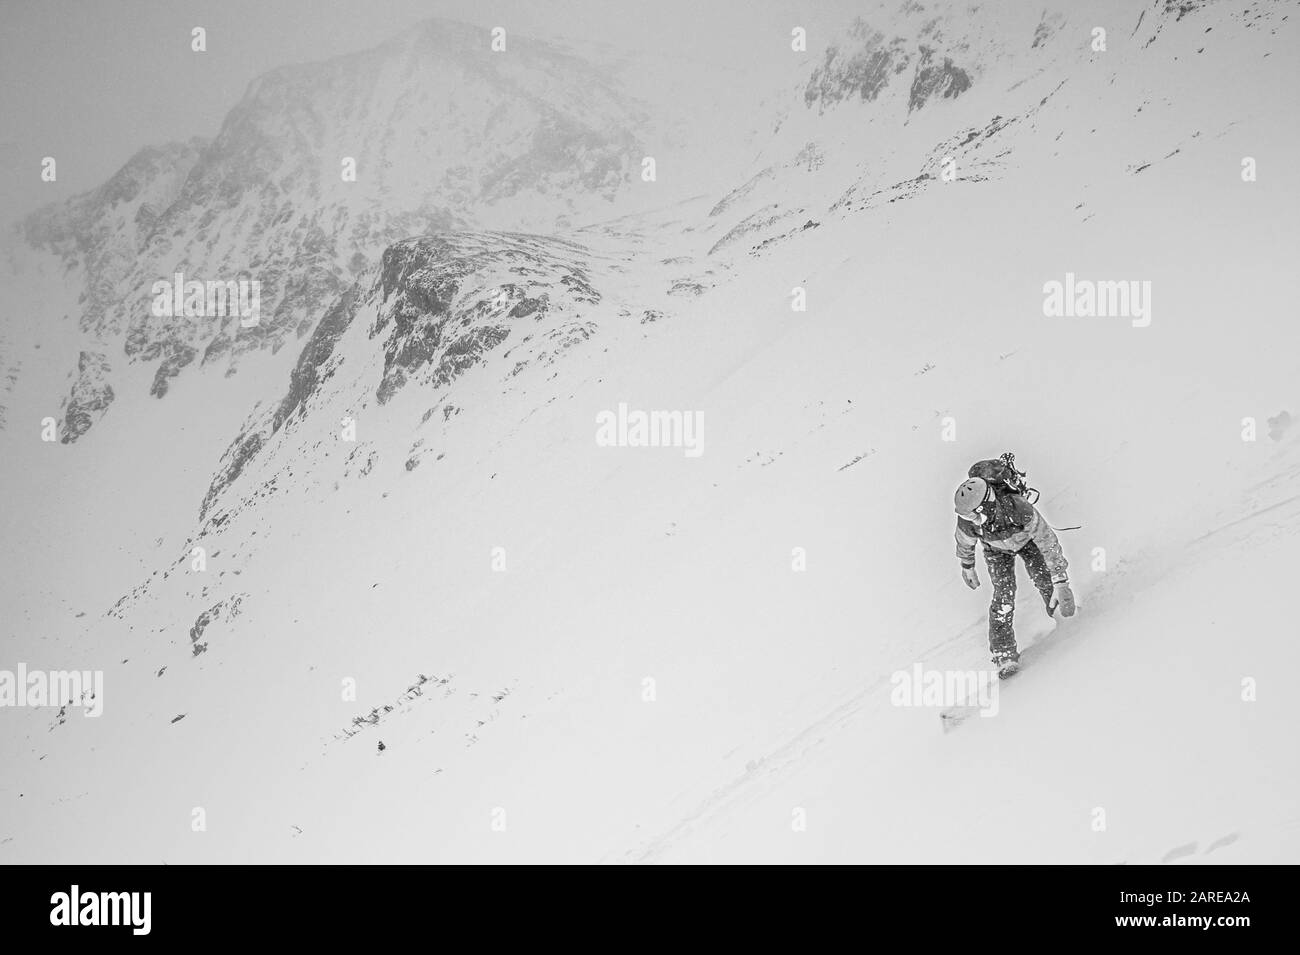 Copper MOUNTAIN, ÉTATS-UNIS - Jan 03, 2020: Une personne qui skier dans les montagnes de cuivre aux États-Unis Banque D'Images